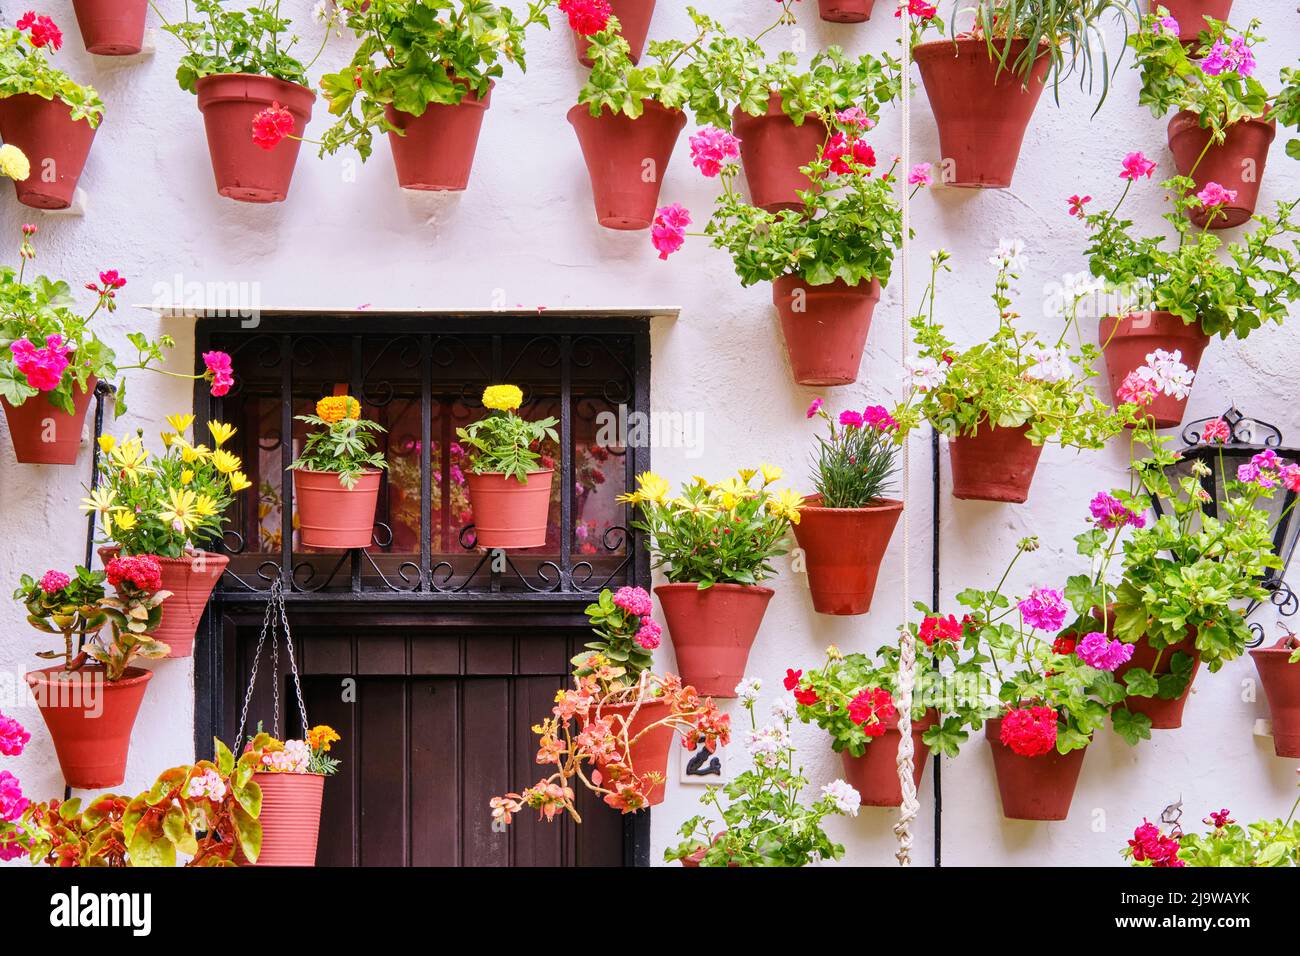 Detalle de un tradicional Patio de Córdoba, un patio lleno de flores y frescura. Patrimonio Cultural Inmaterial de la Humanidad de la UNESCO. España Foto de stock